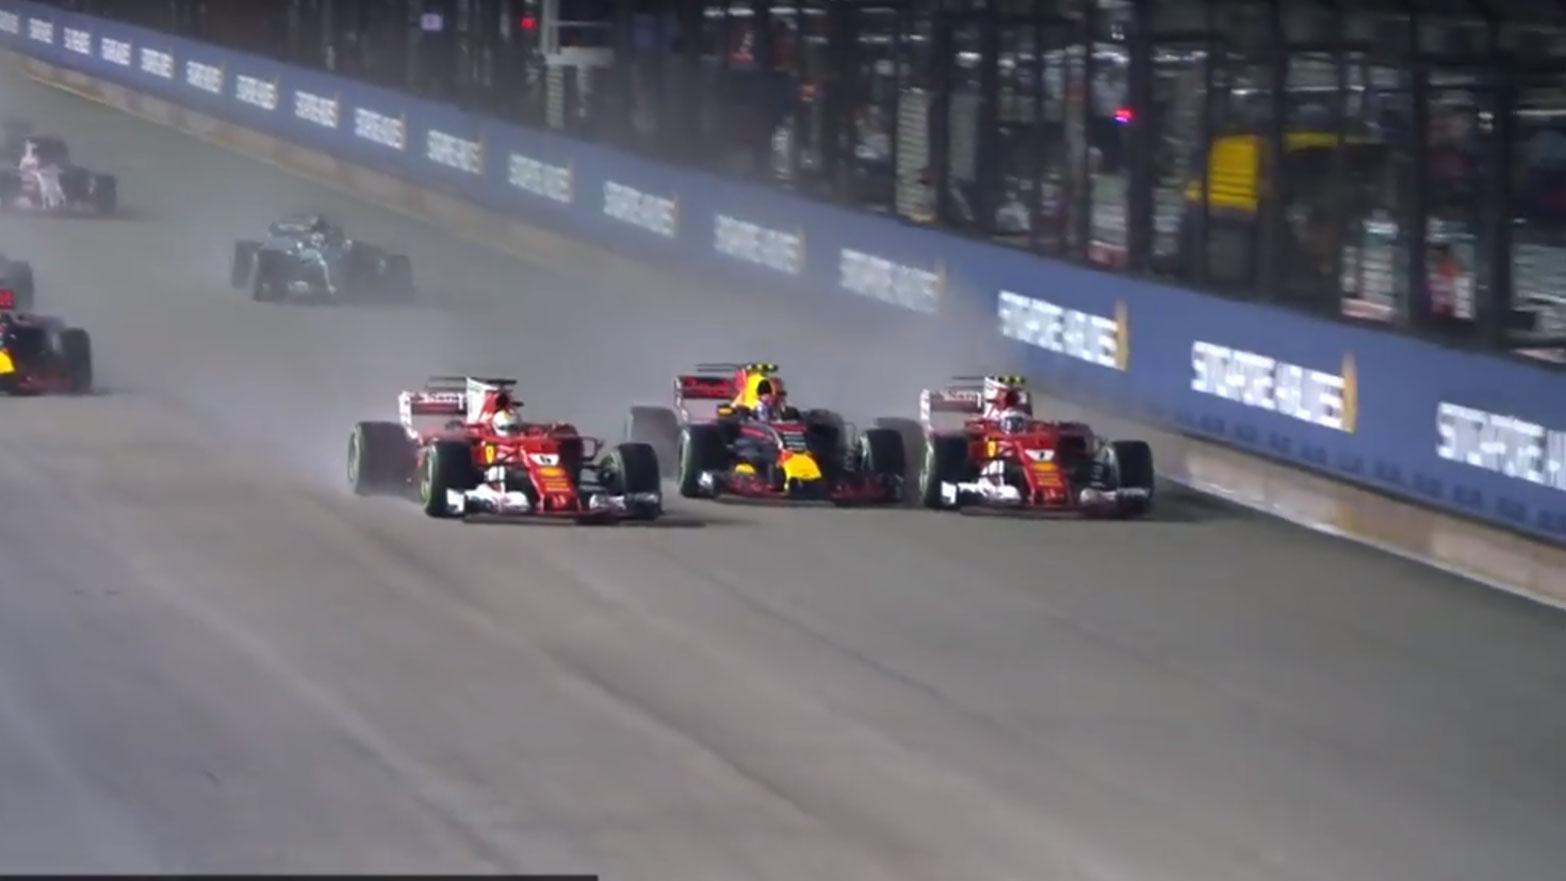 Crash Verstappen, Vettel en raikkonen in Singapore